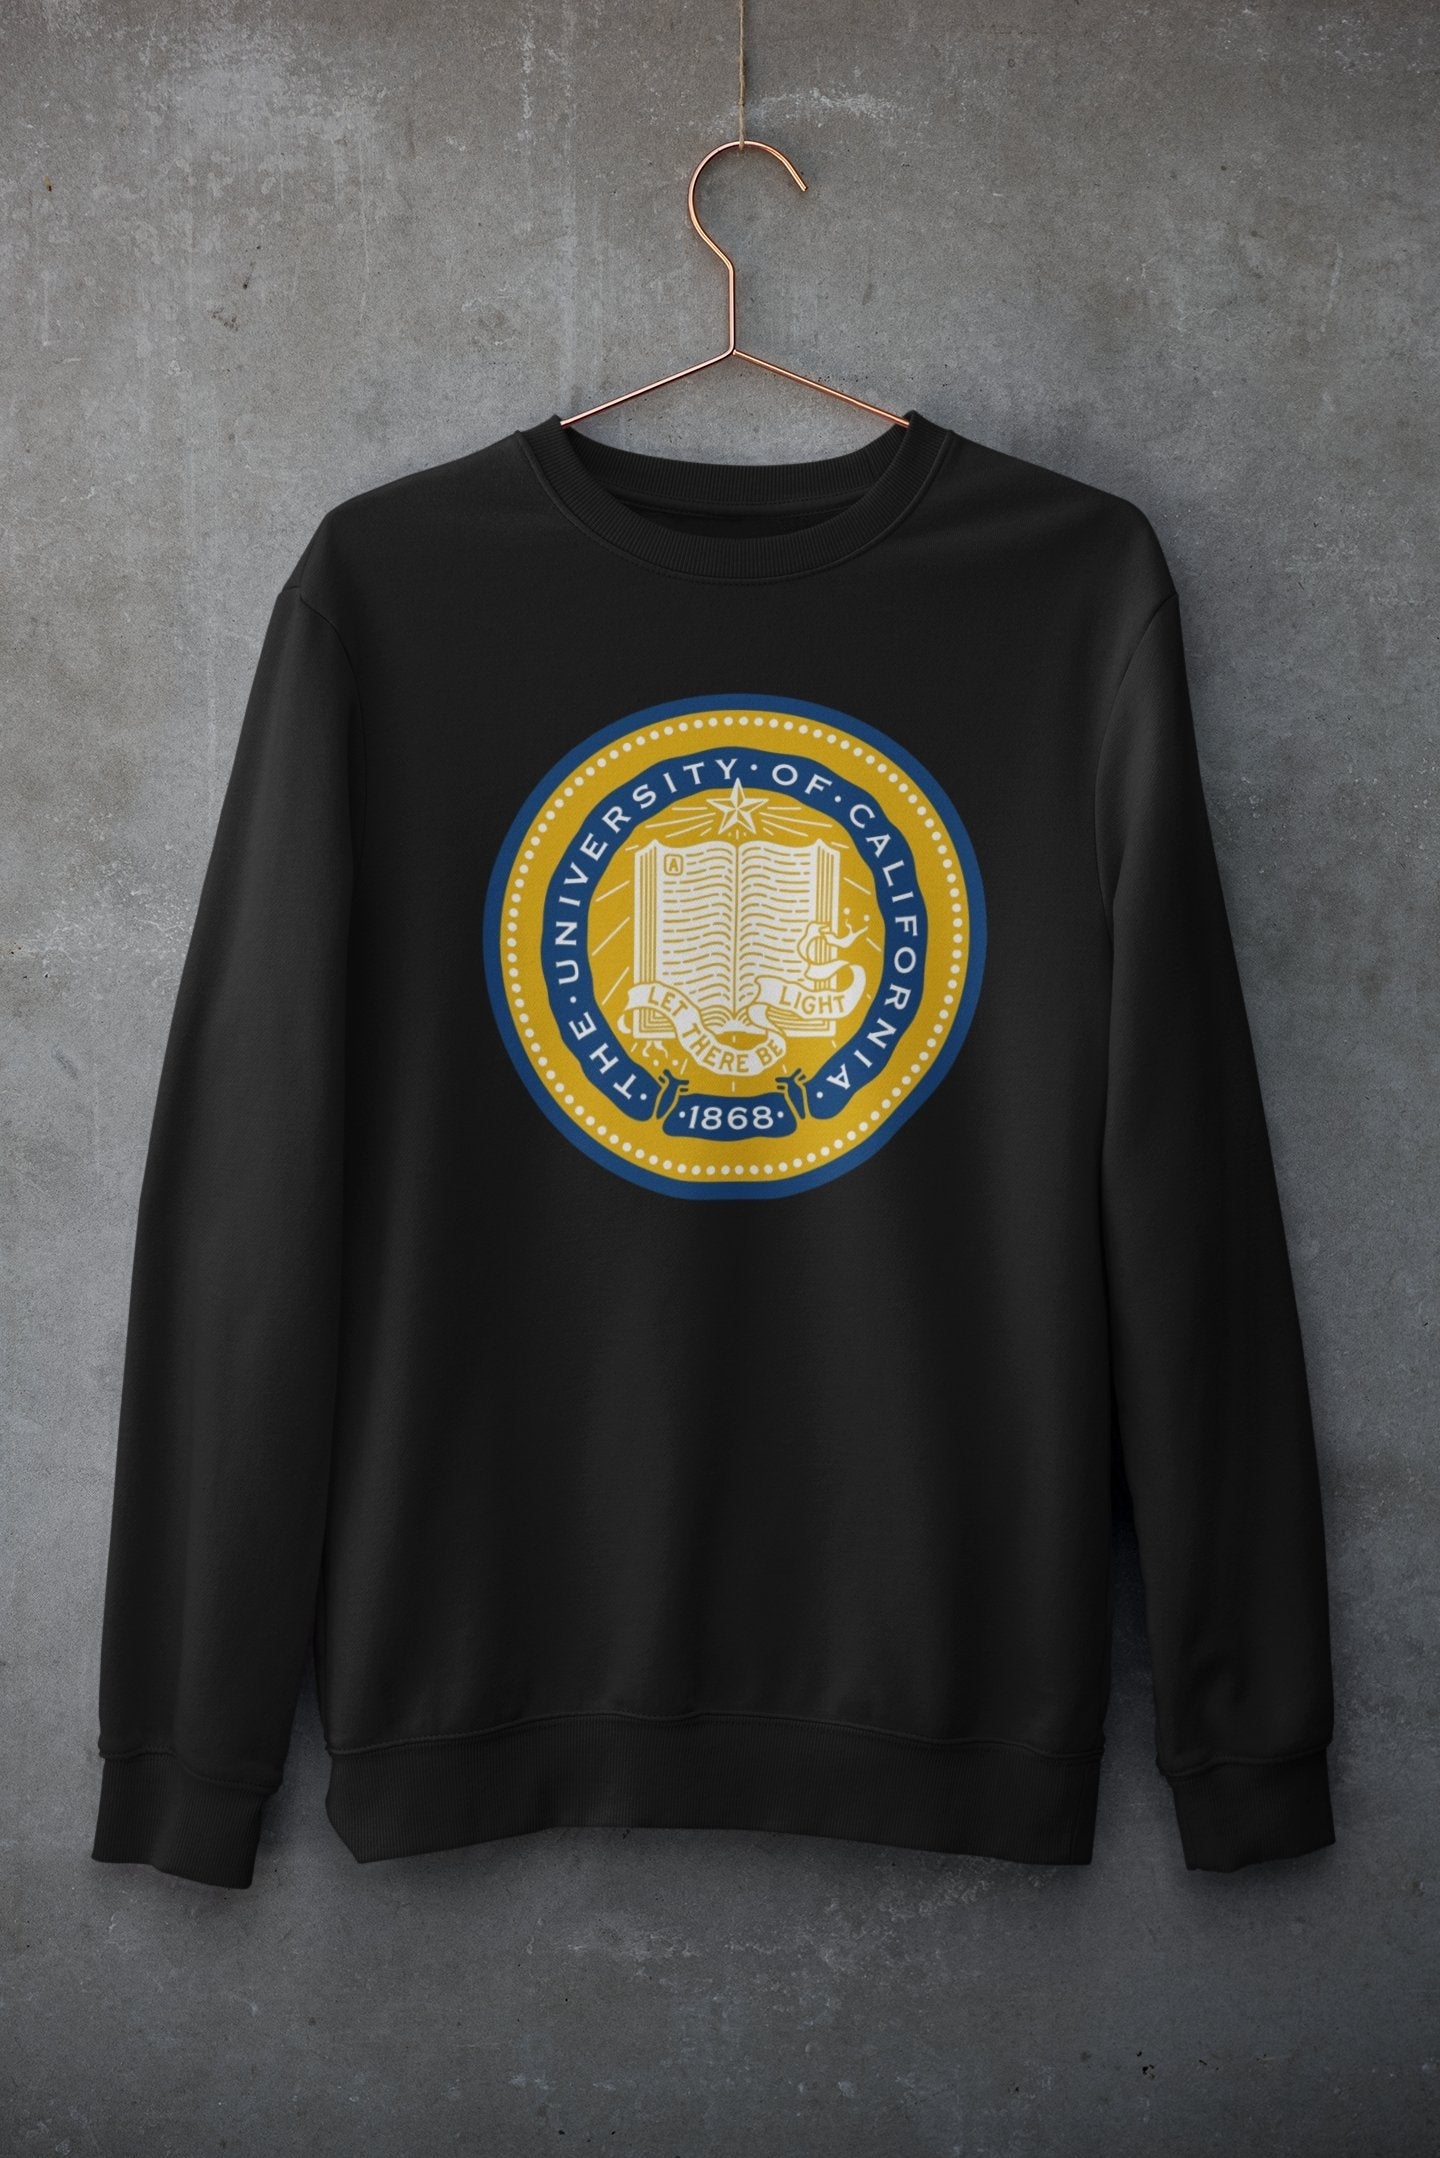 California Varsity Graphic Sweatshirt